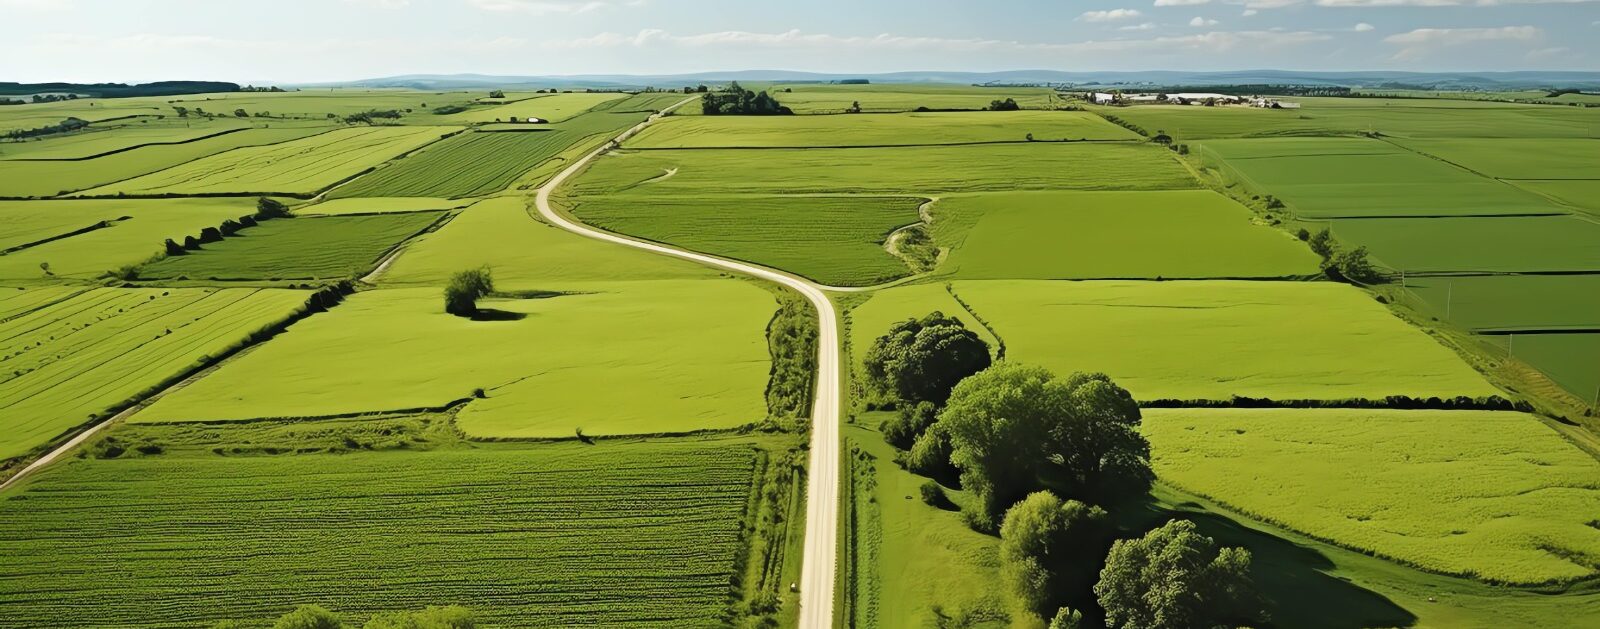 Uma estrada sinuosa atravessa vastos campos verdes sob um céu azul claro com nuvens esparsas, sendo uma boa imagem para falar da diferença de lote regular e irregular.